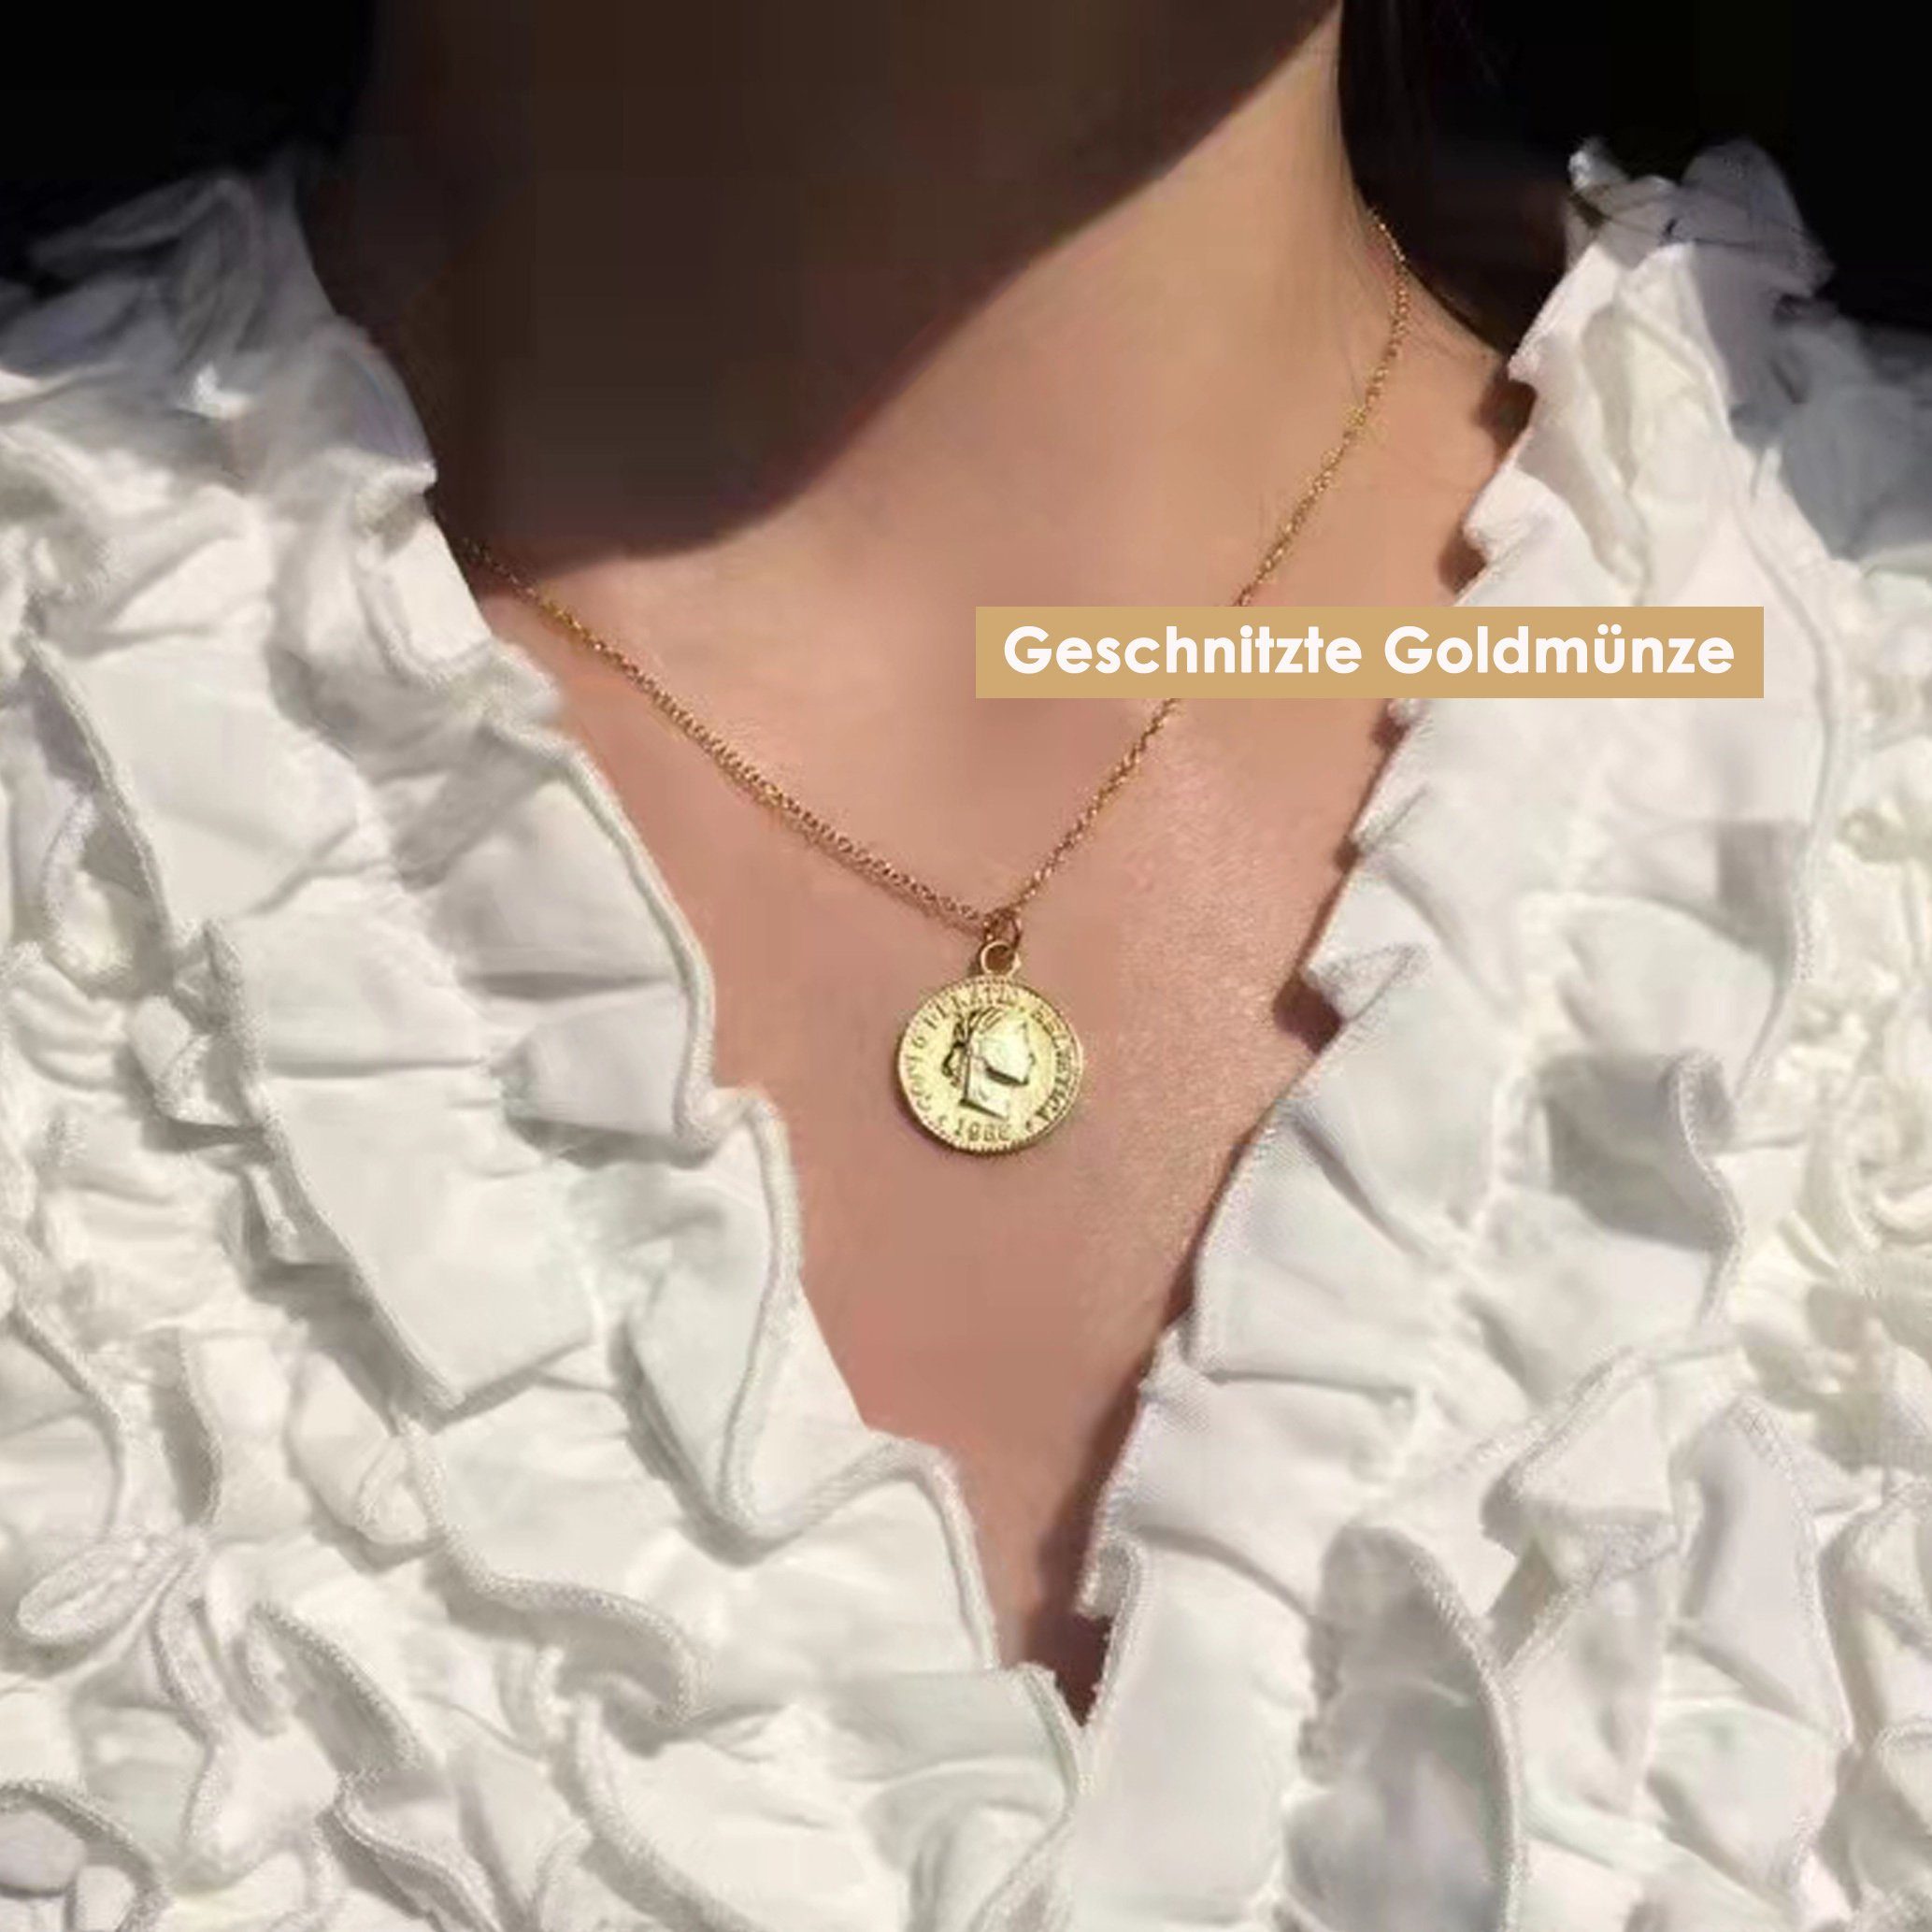 GOLDEN Charm-Kette Sommerliche Medusa Halskette aus Glasperlen, Edelsteinen 18K vergoldet Geschnitzte Goldmünze